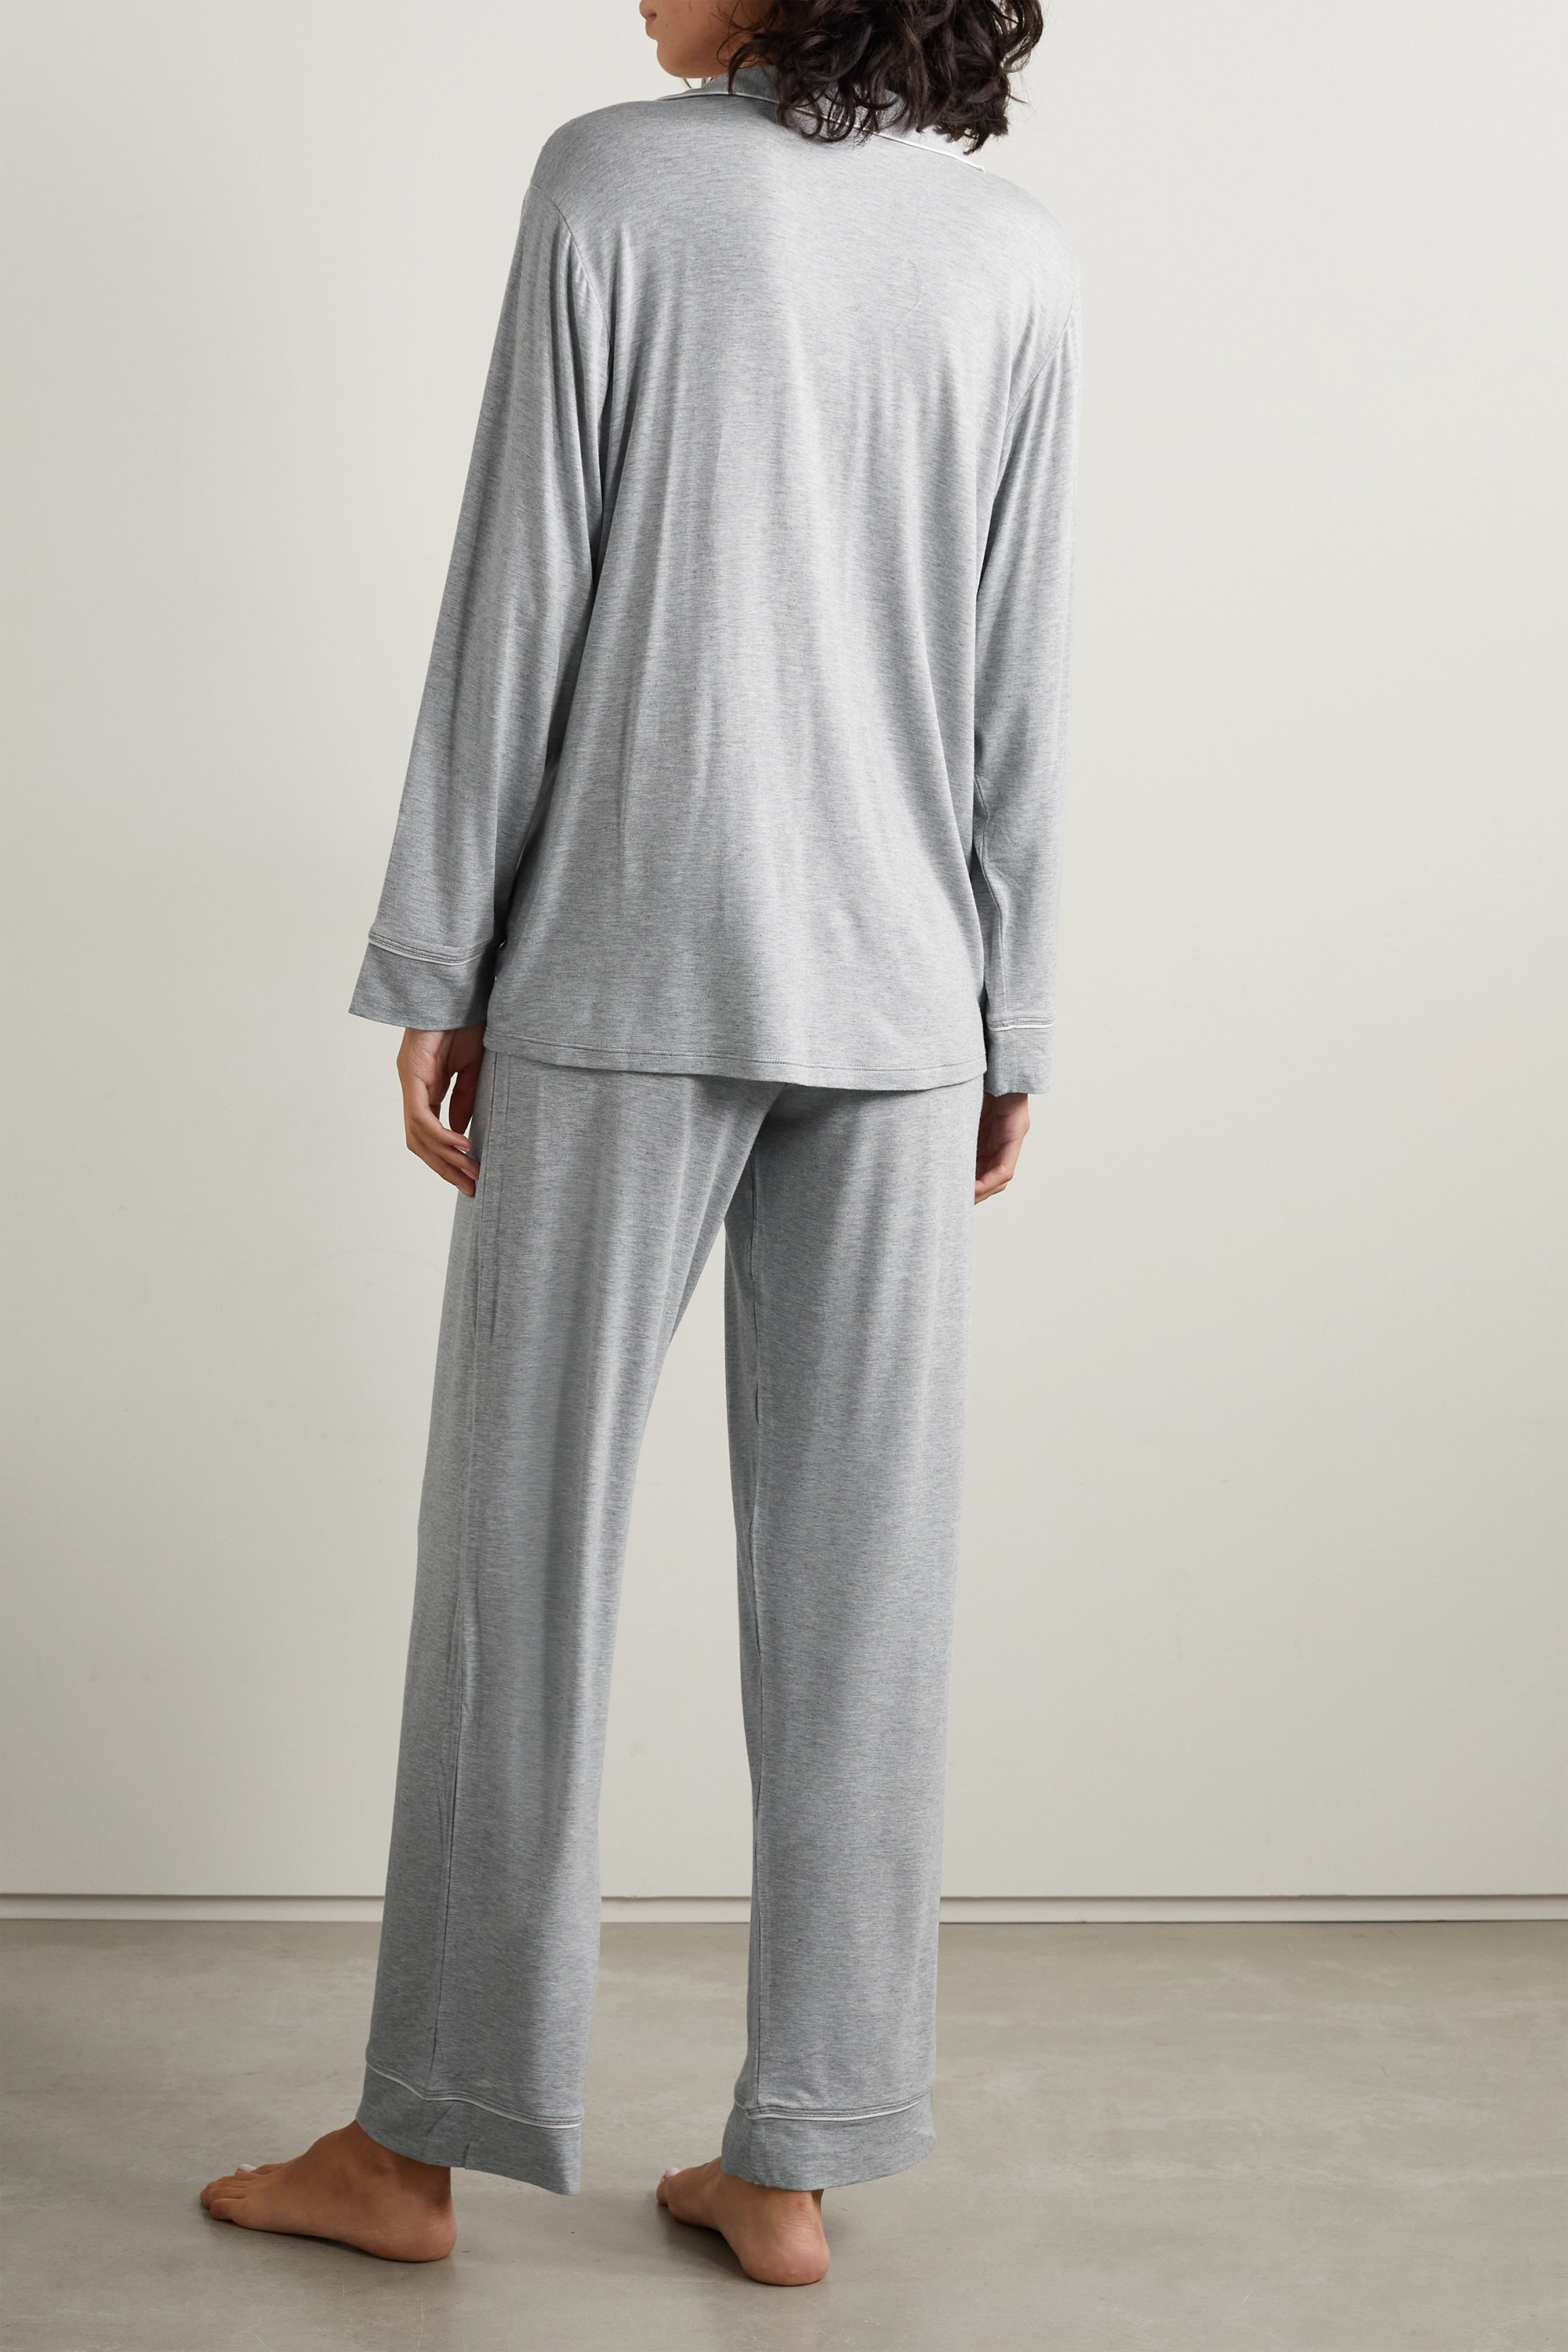 EBERJEY пижамный комплект Gisele из эластичного модала с окантовкой, серый